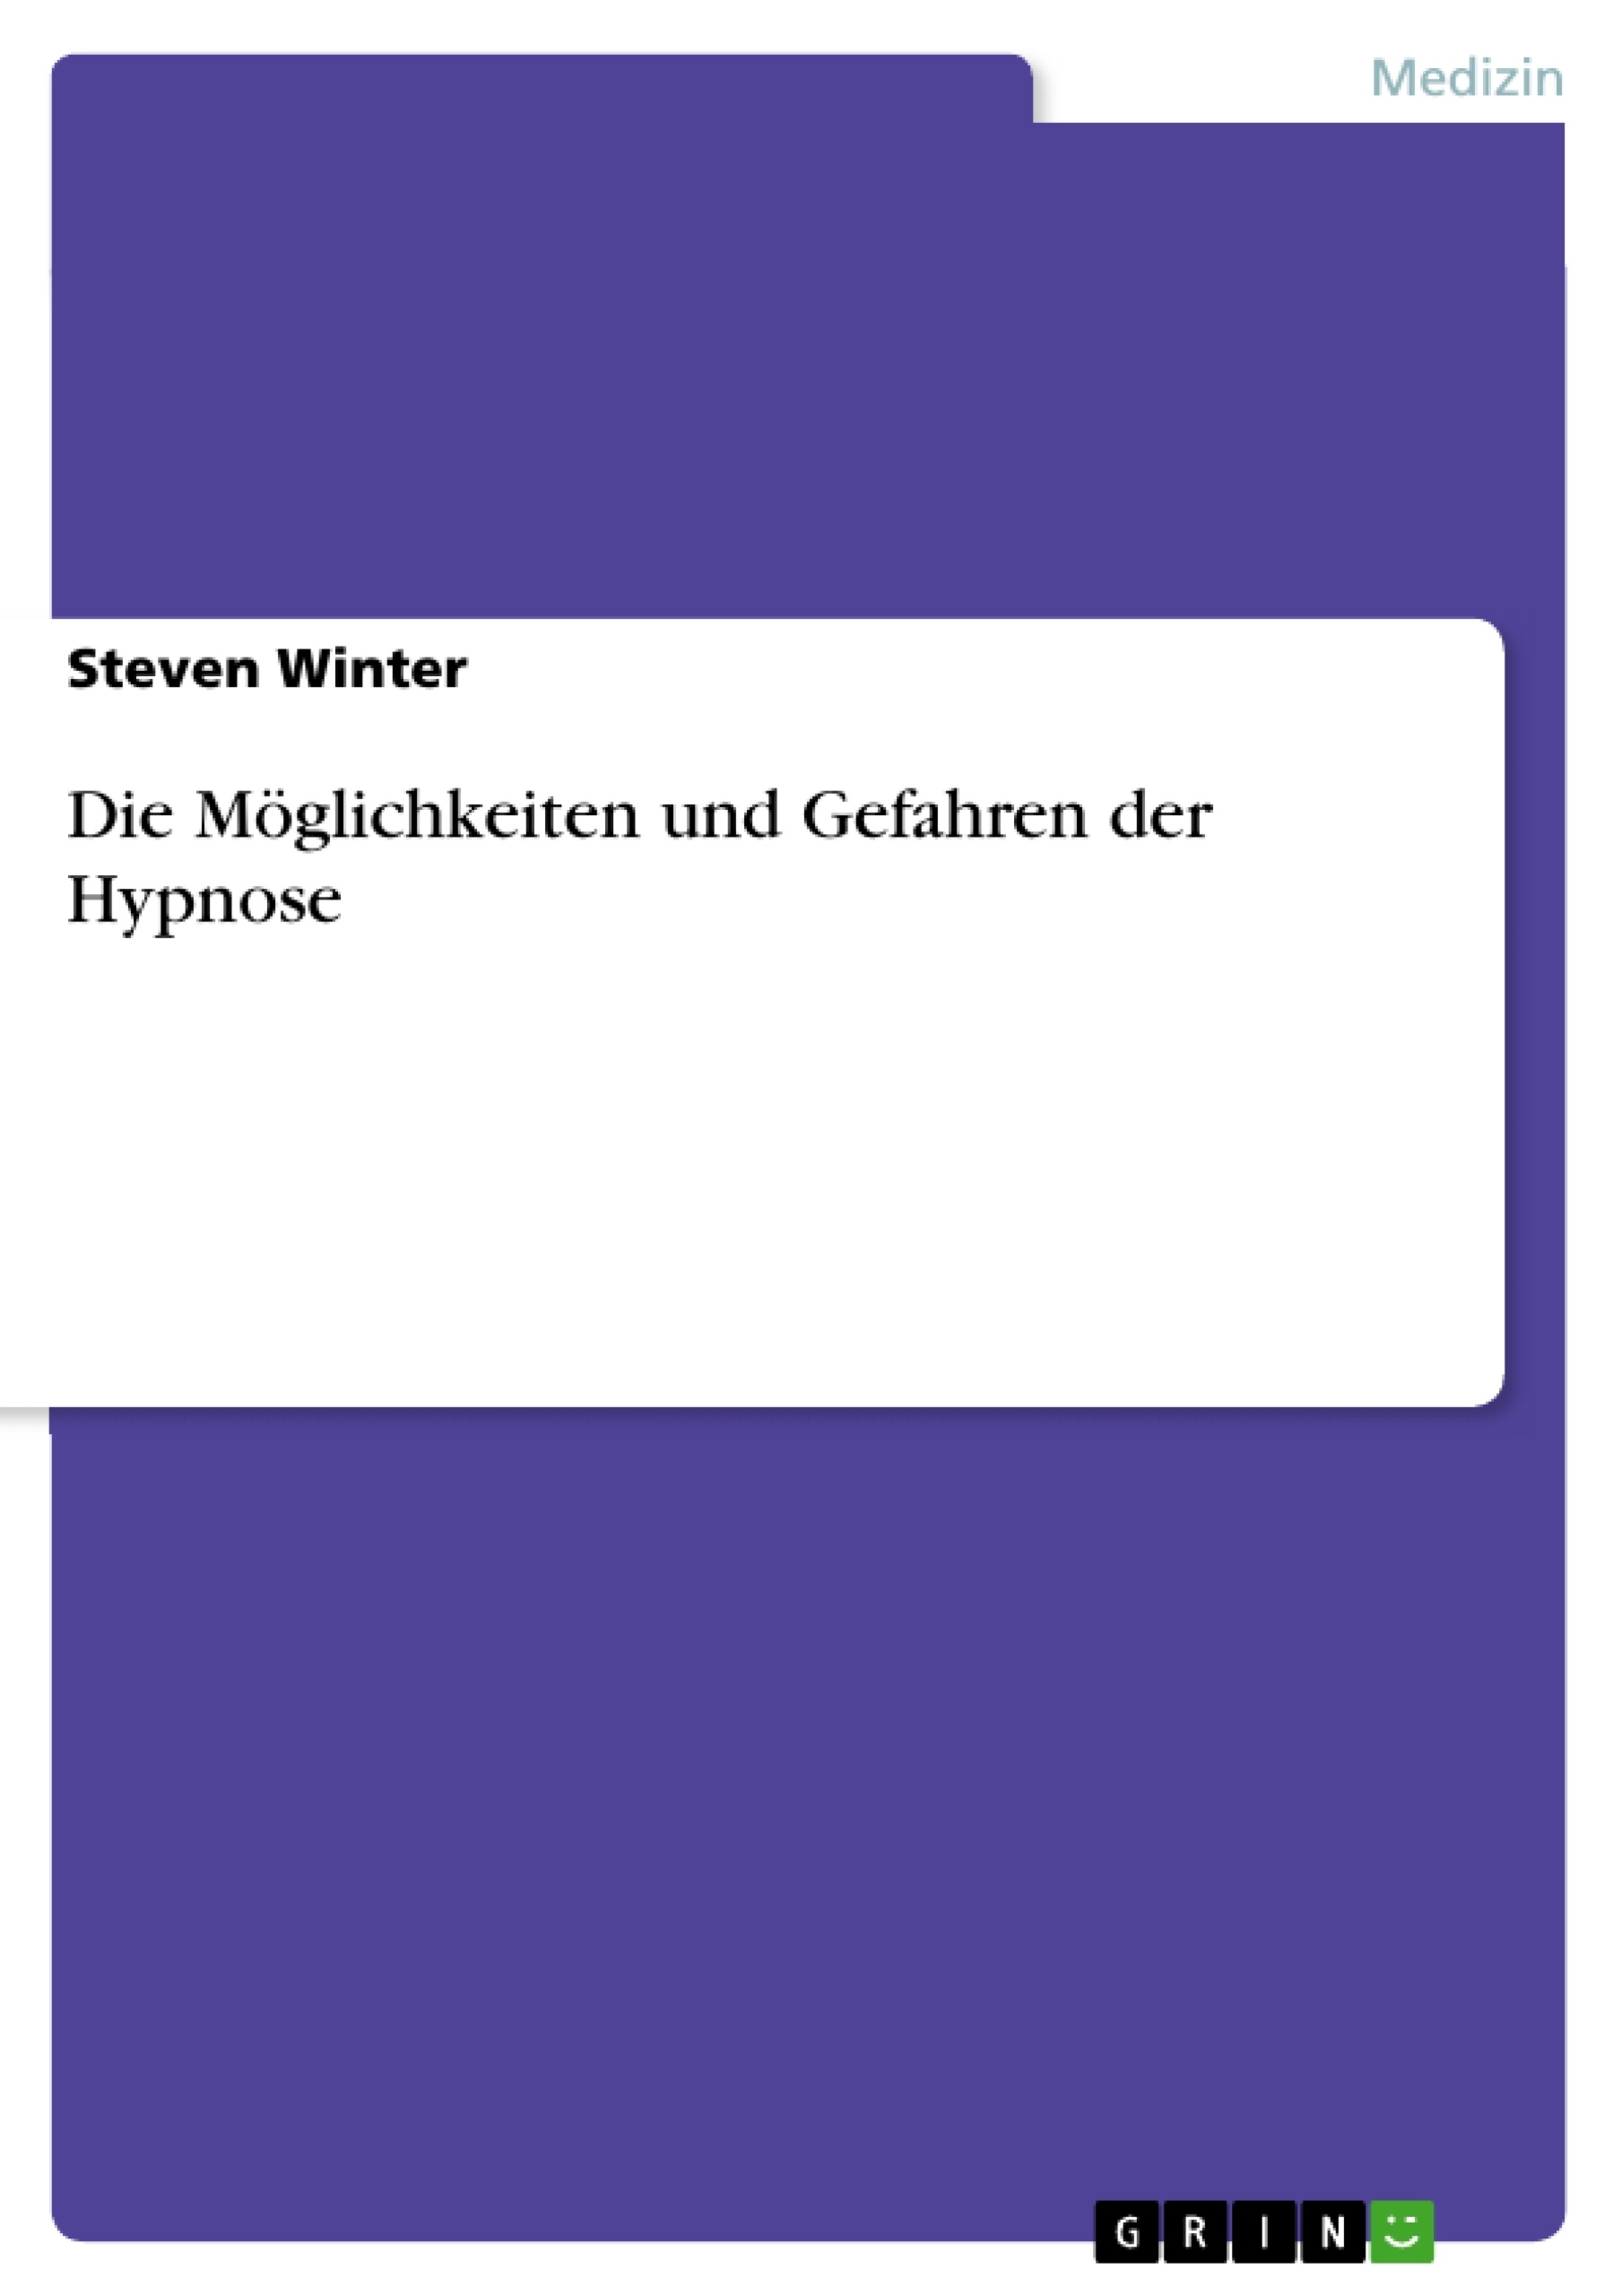 Title: Die Möglichkeiten und Gefahren der Hypnose